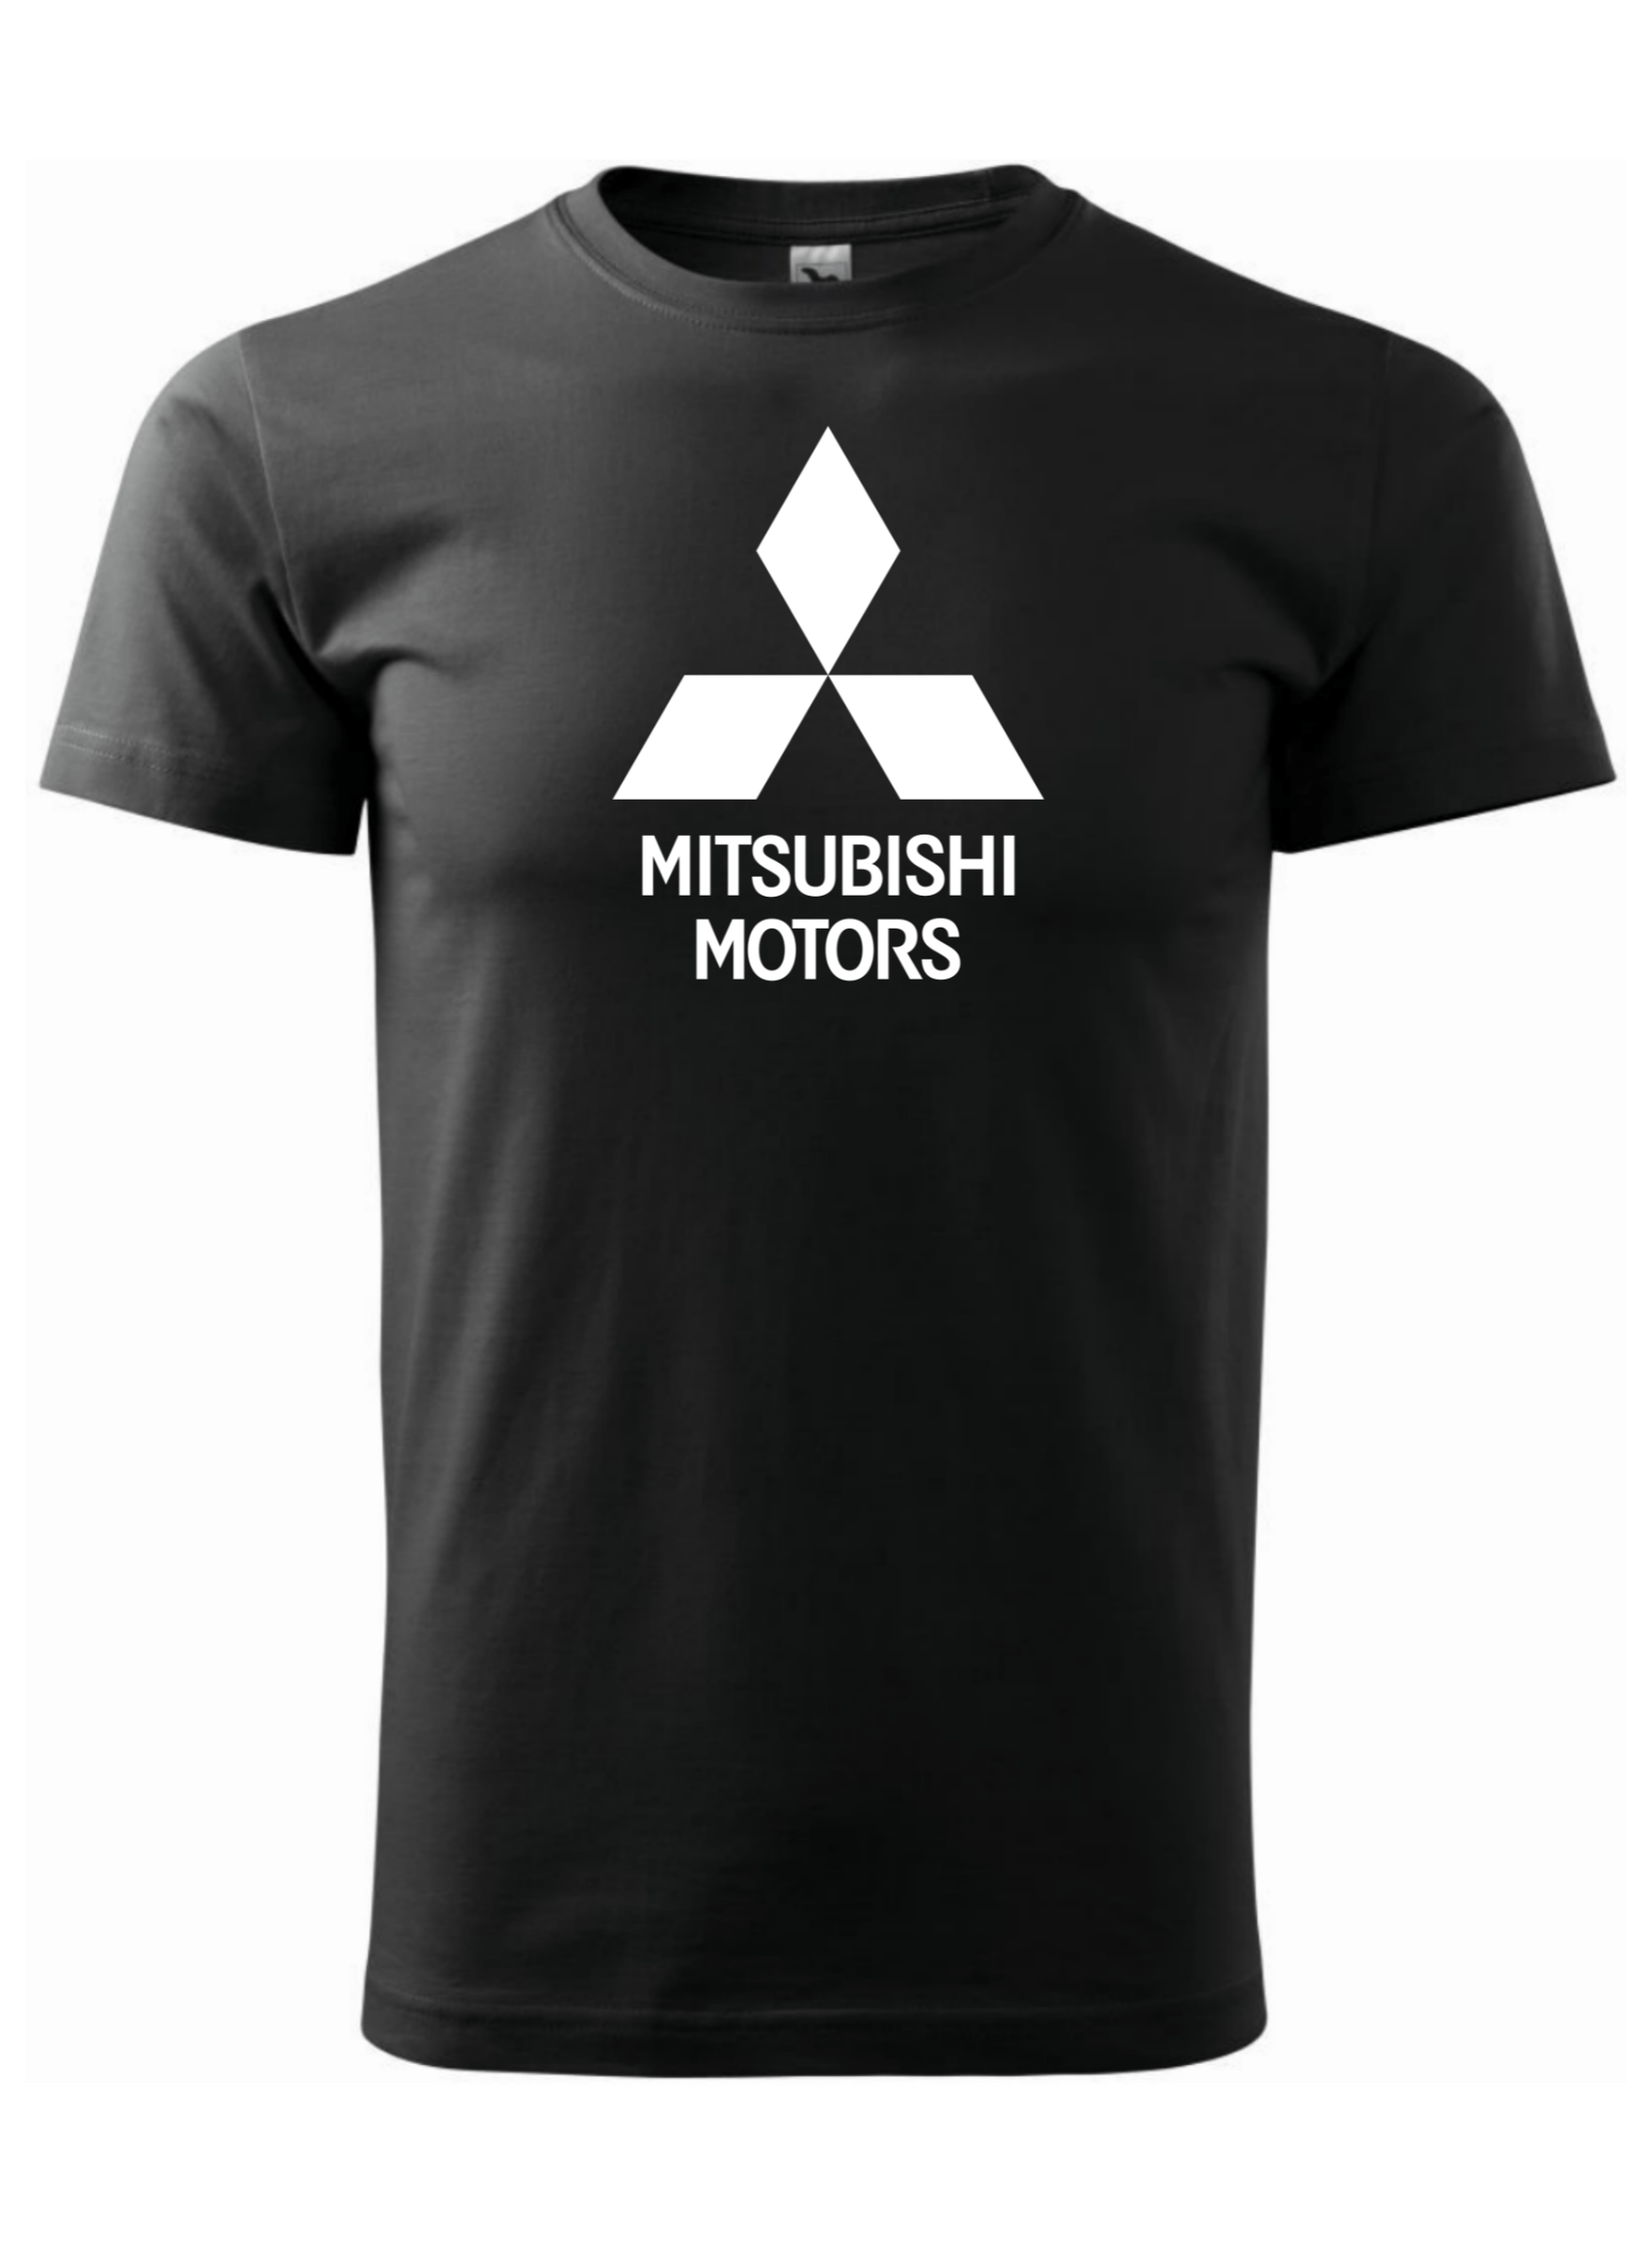 Pánské tričko s potiskem značky Mitsubishi